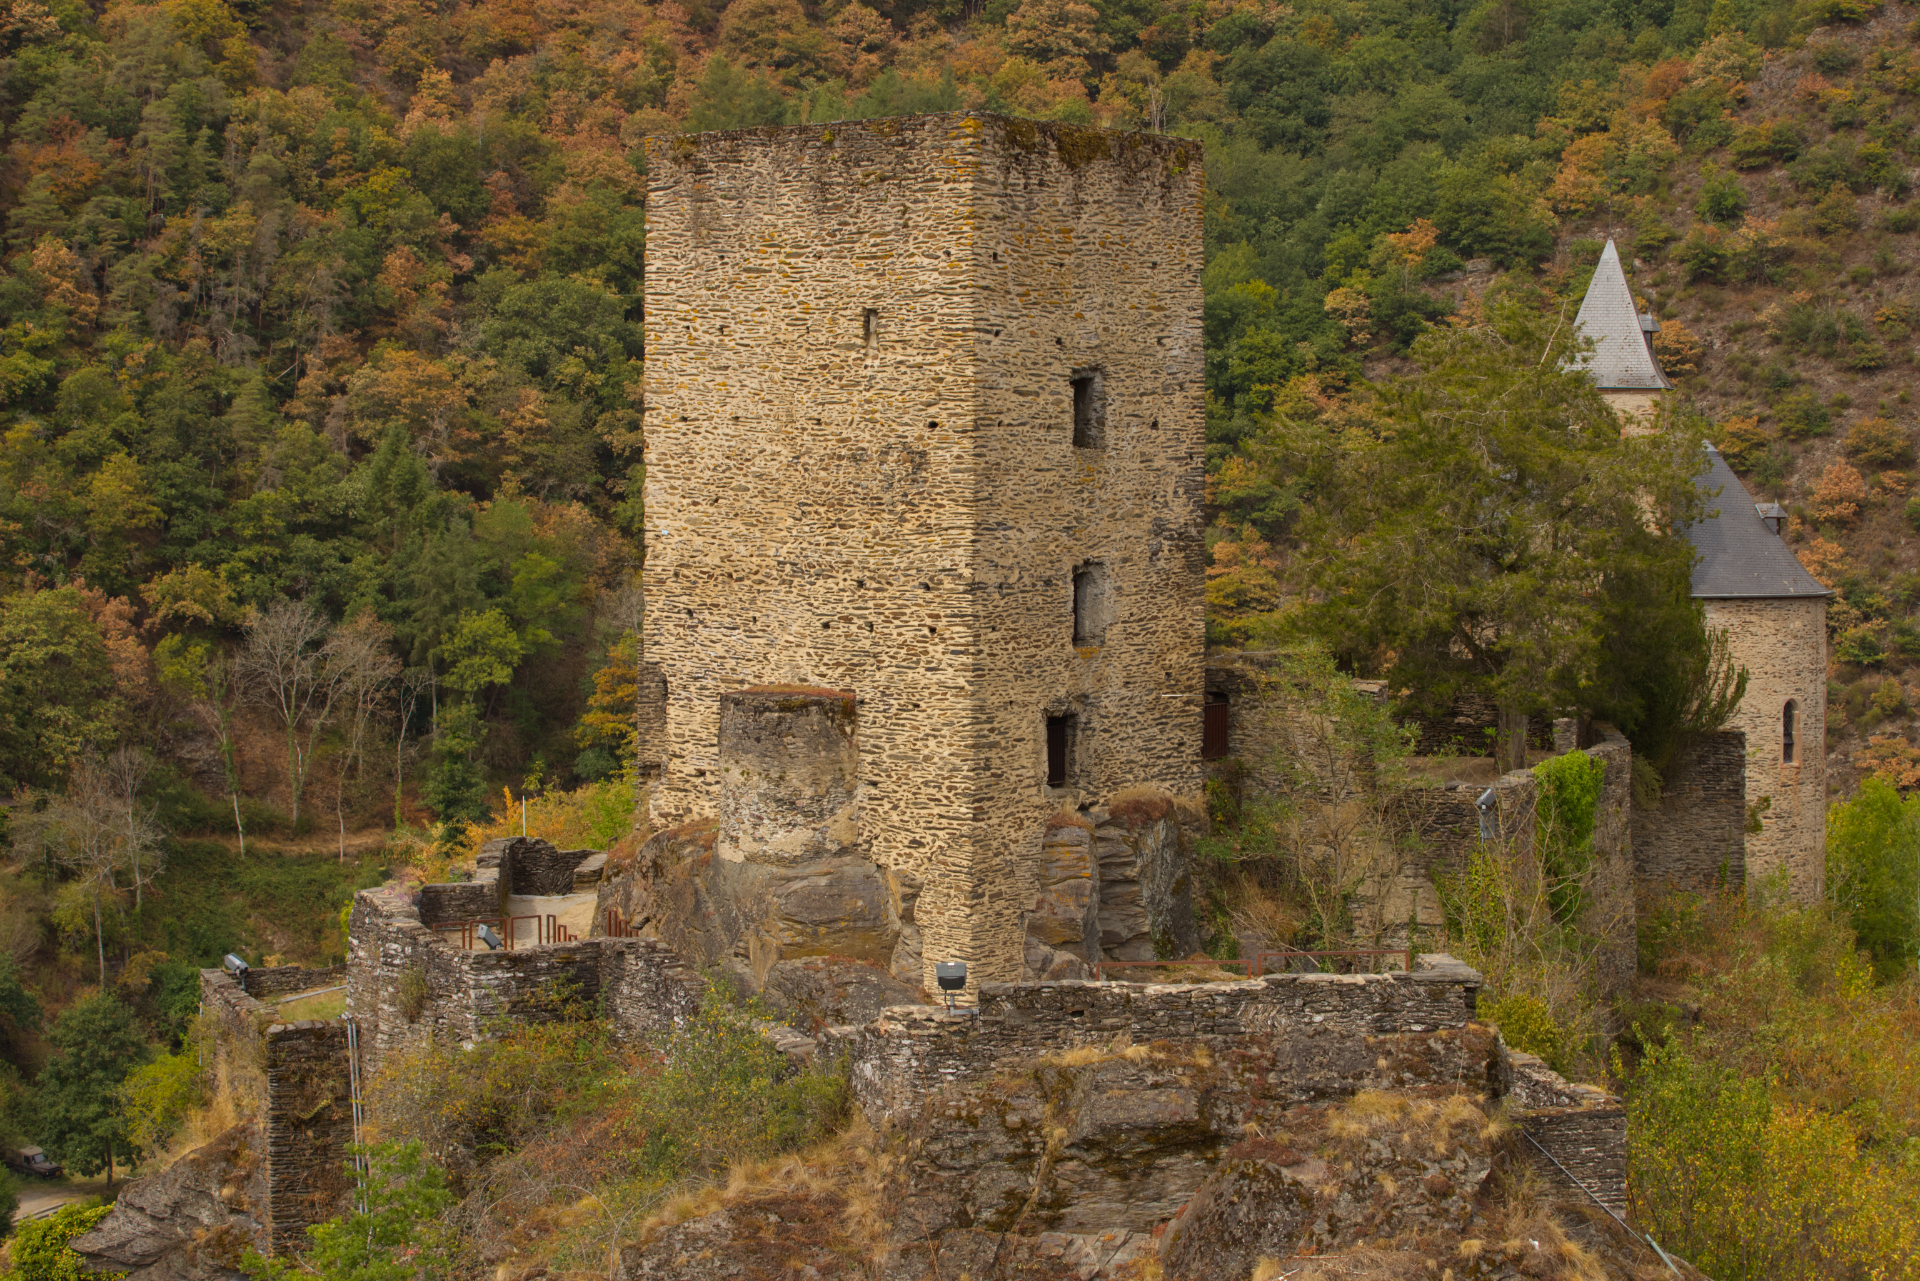 Esch-sur-Sure castle